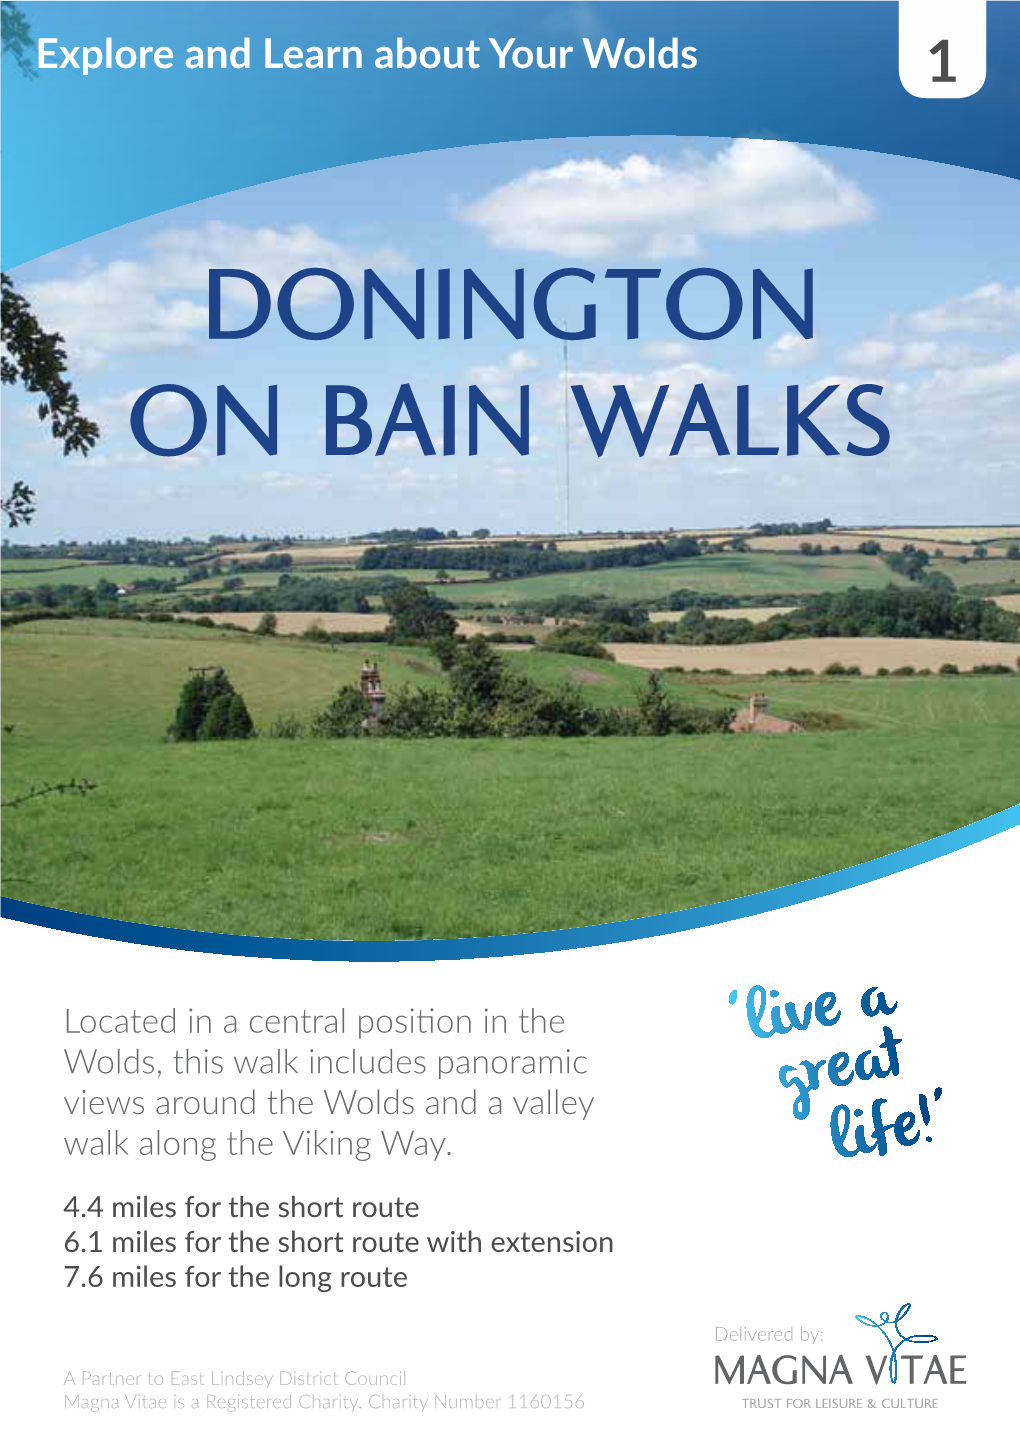 Donington on Bain Walks